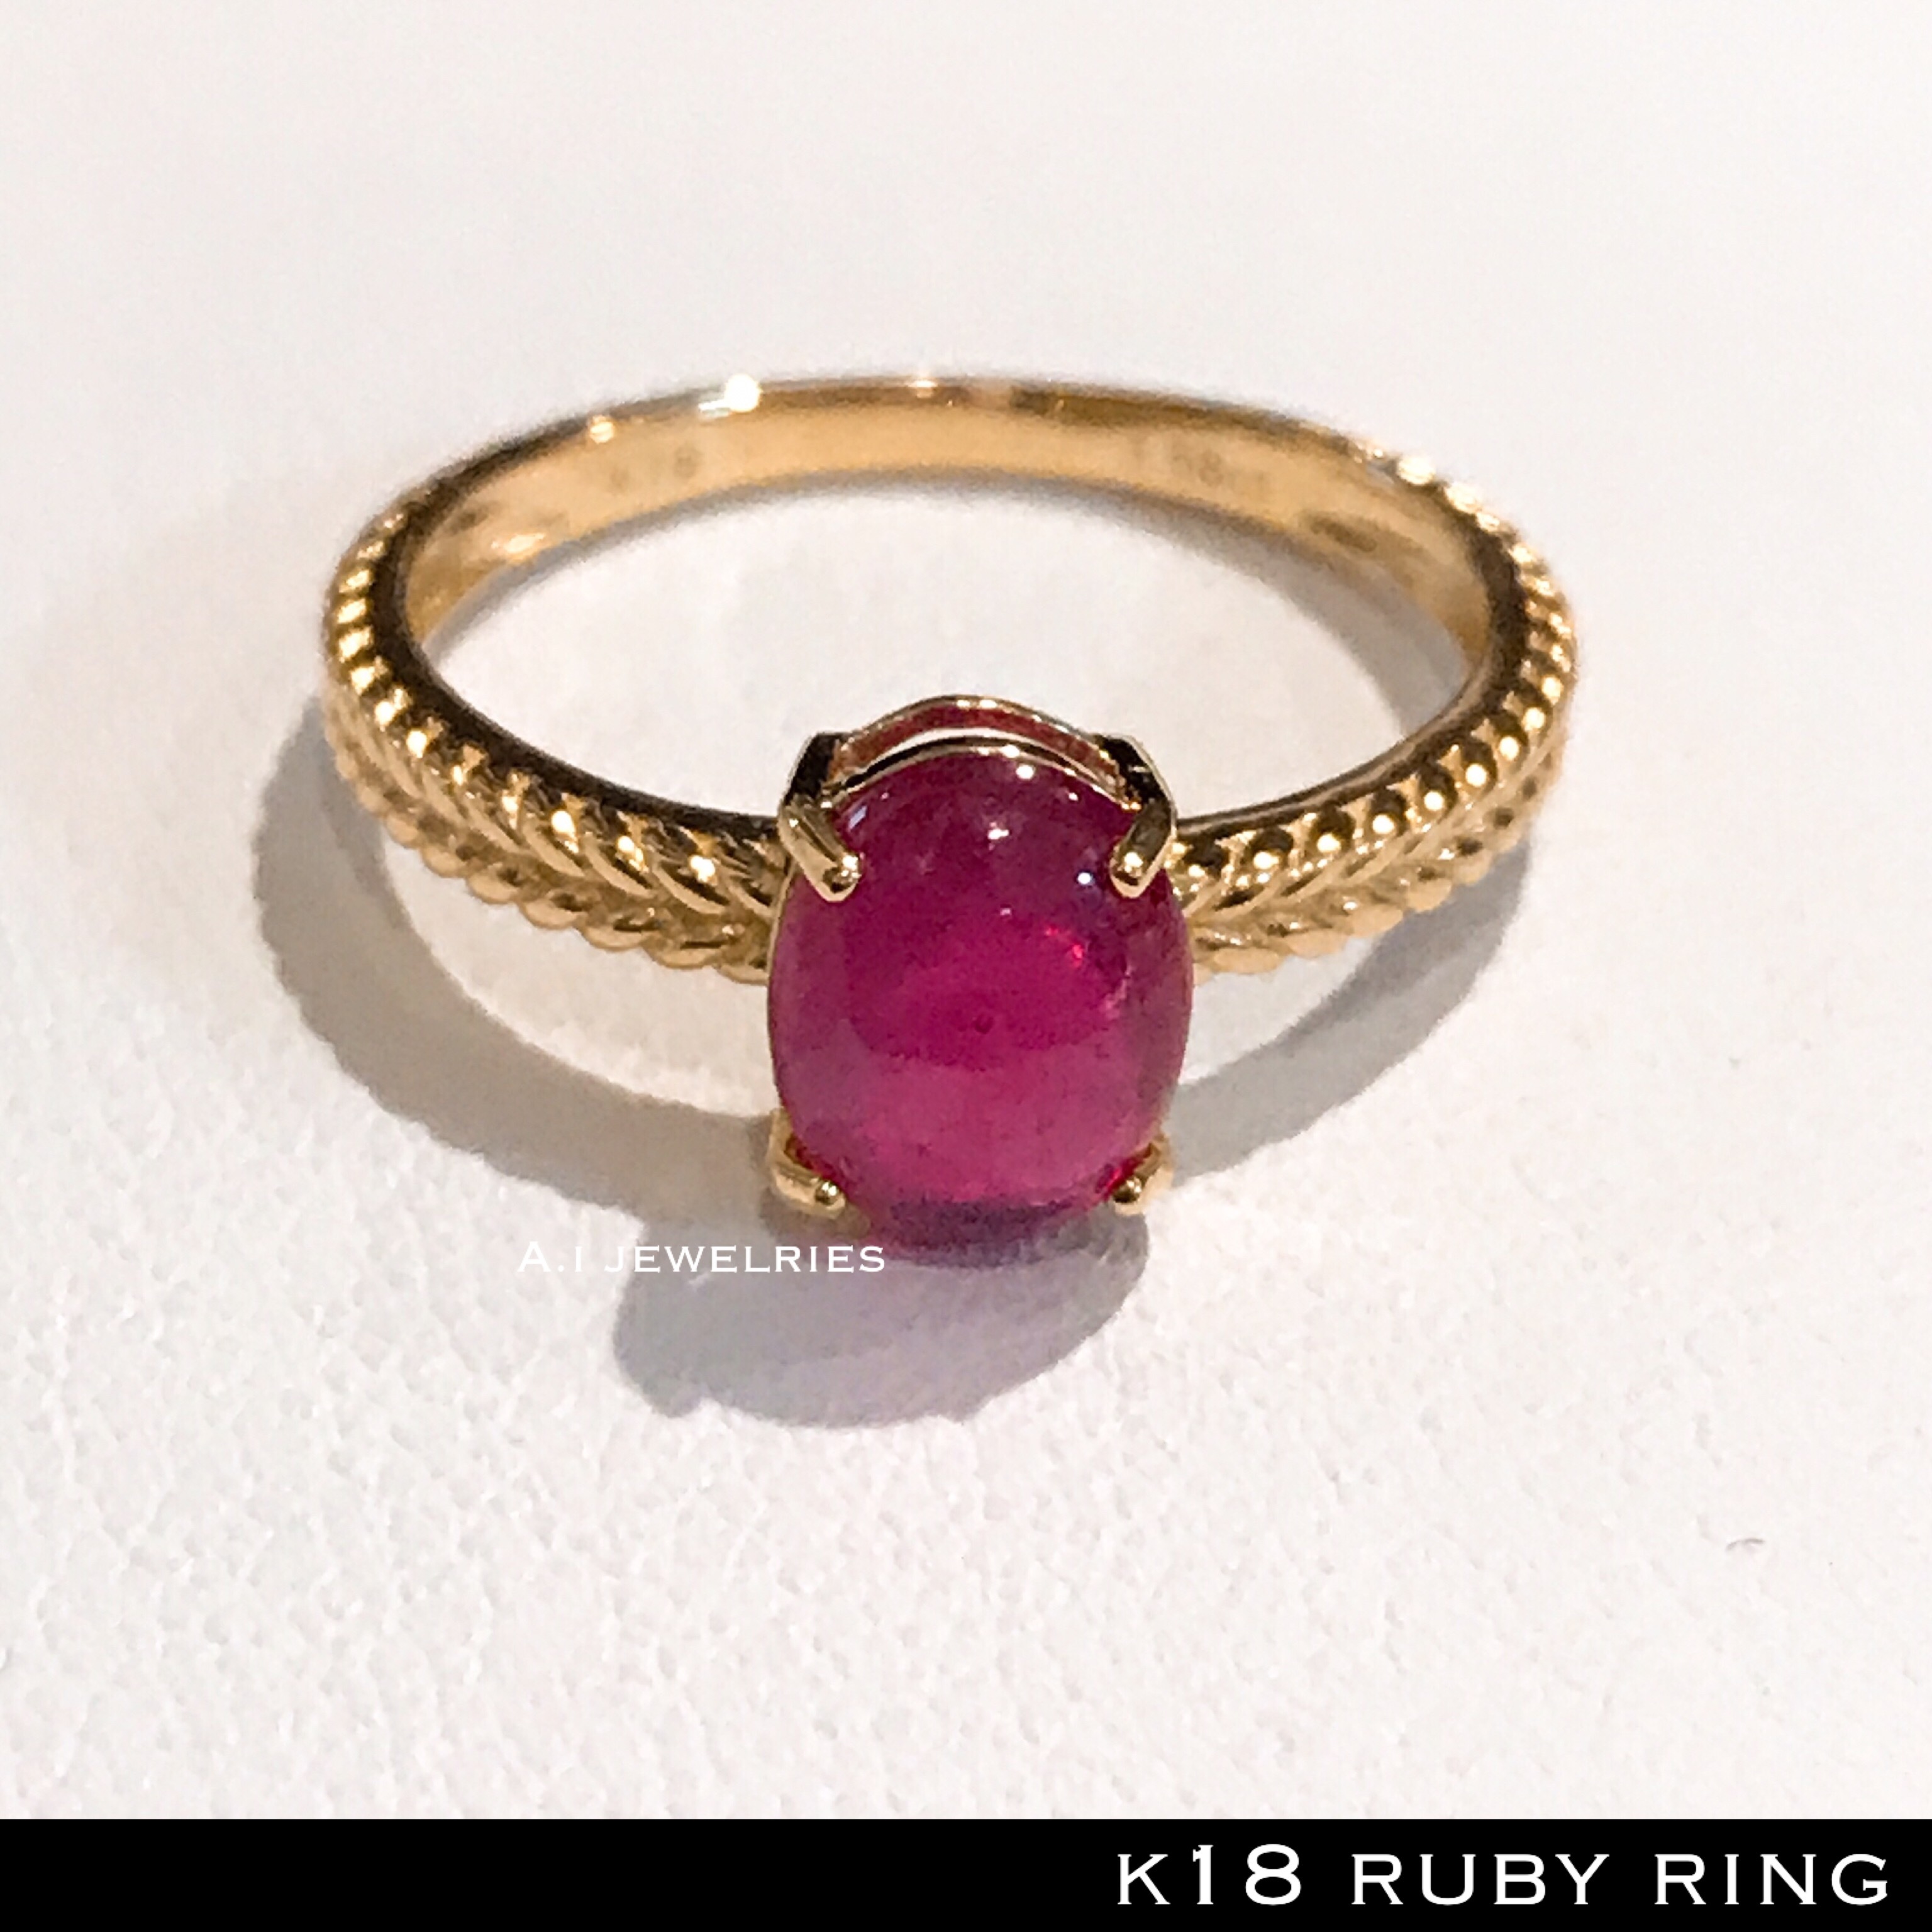 リング 18金 ルビー k18 天然石 ルビー 指輪 本物 / k18 ruby ring | A.I JEWELRIES / エイアイジュエリーズ